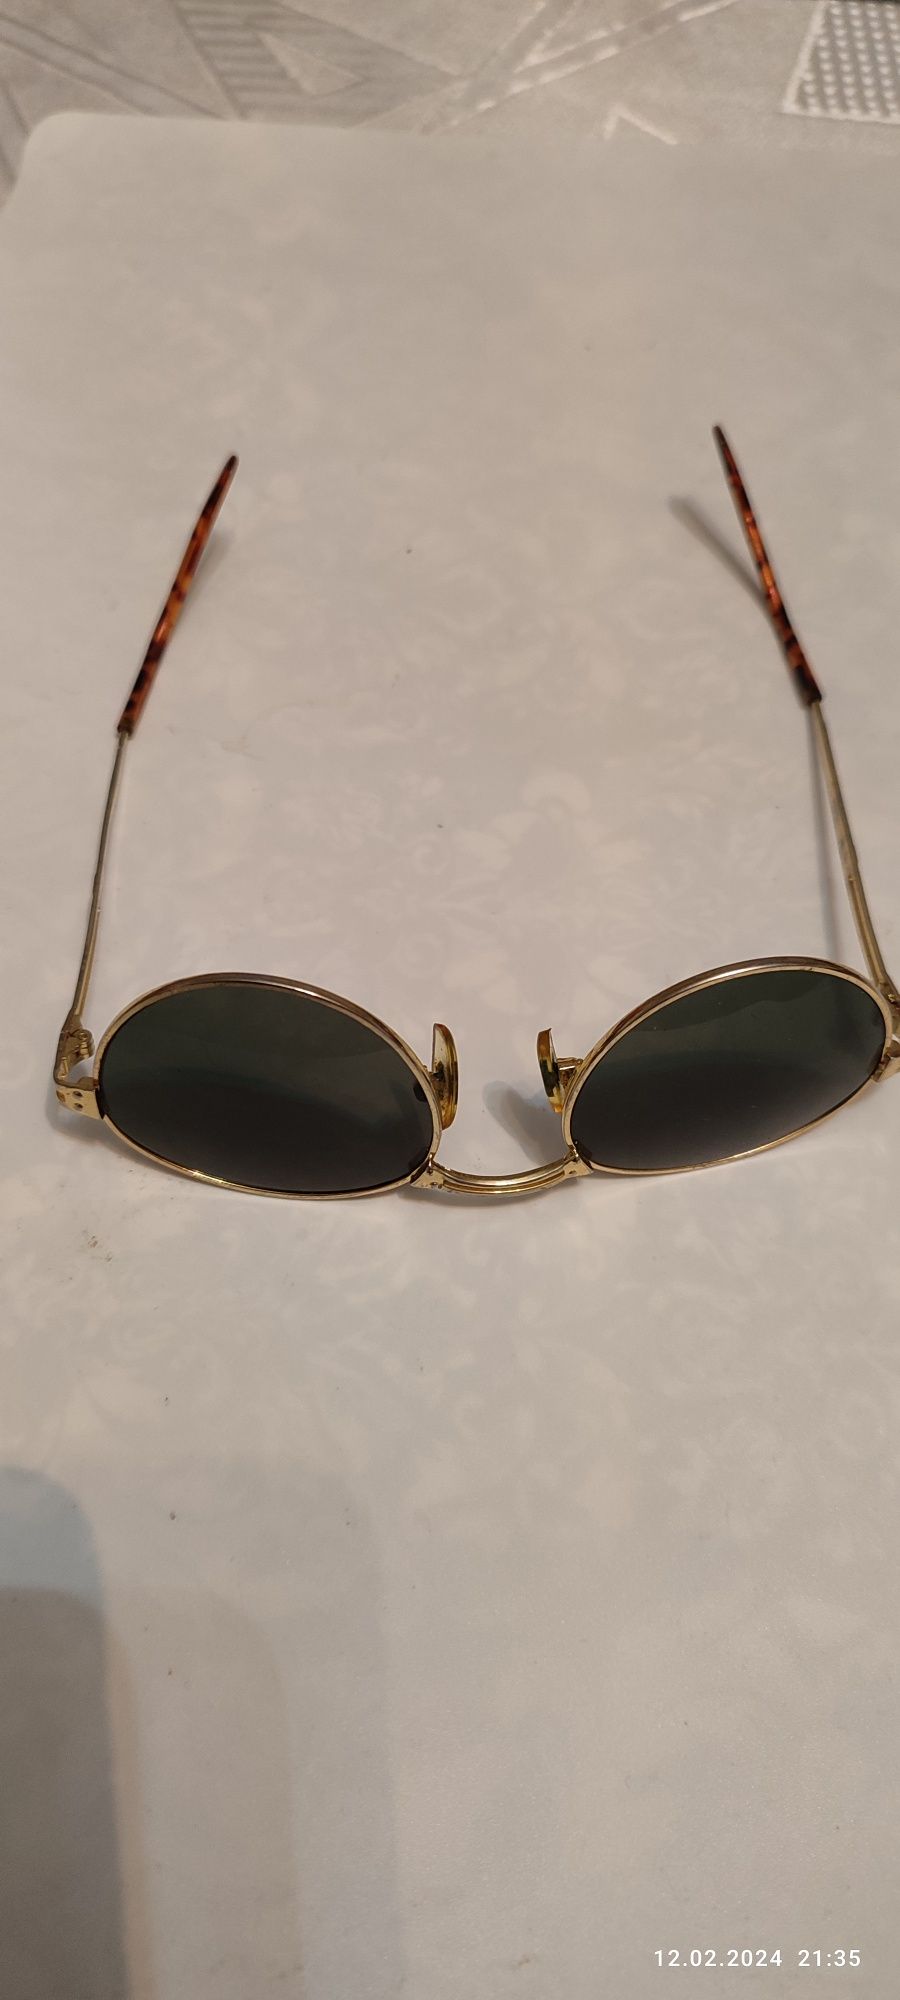 Stare okulary przeciwsłoneczne korekcyjne